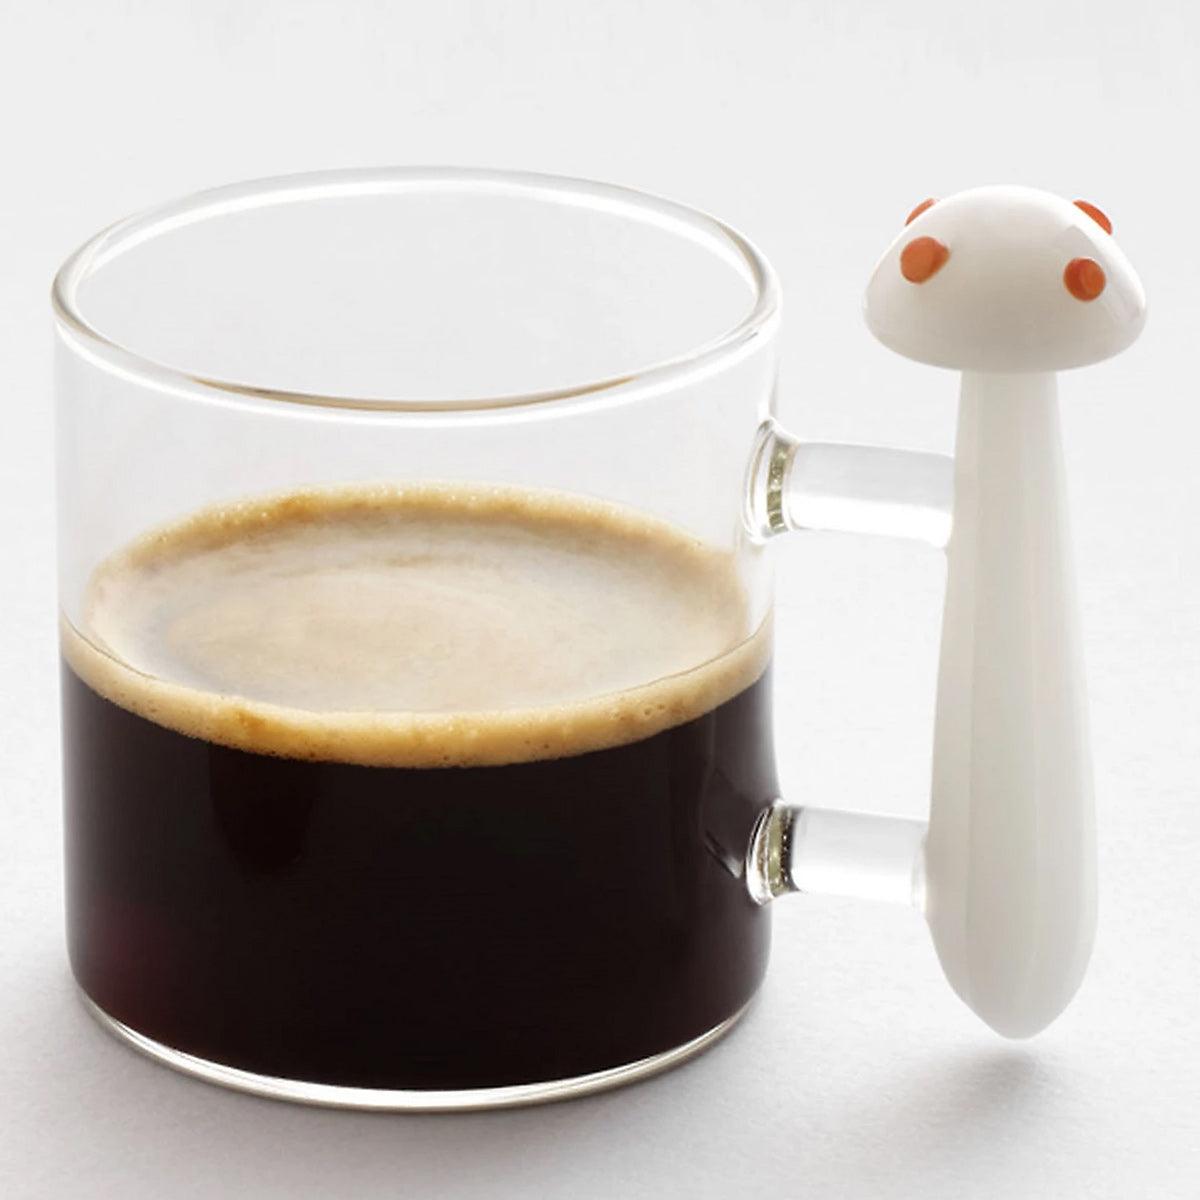 110cc【愛麗絲咖啡杯】(白蘑菇) 義大利Ichendorf 手工茶杯盤組 - MSA玻璃雕刻